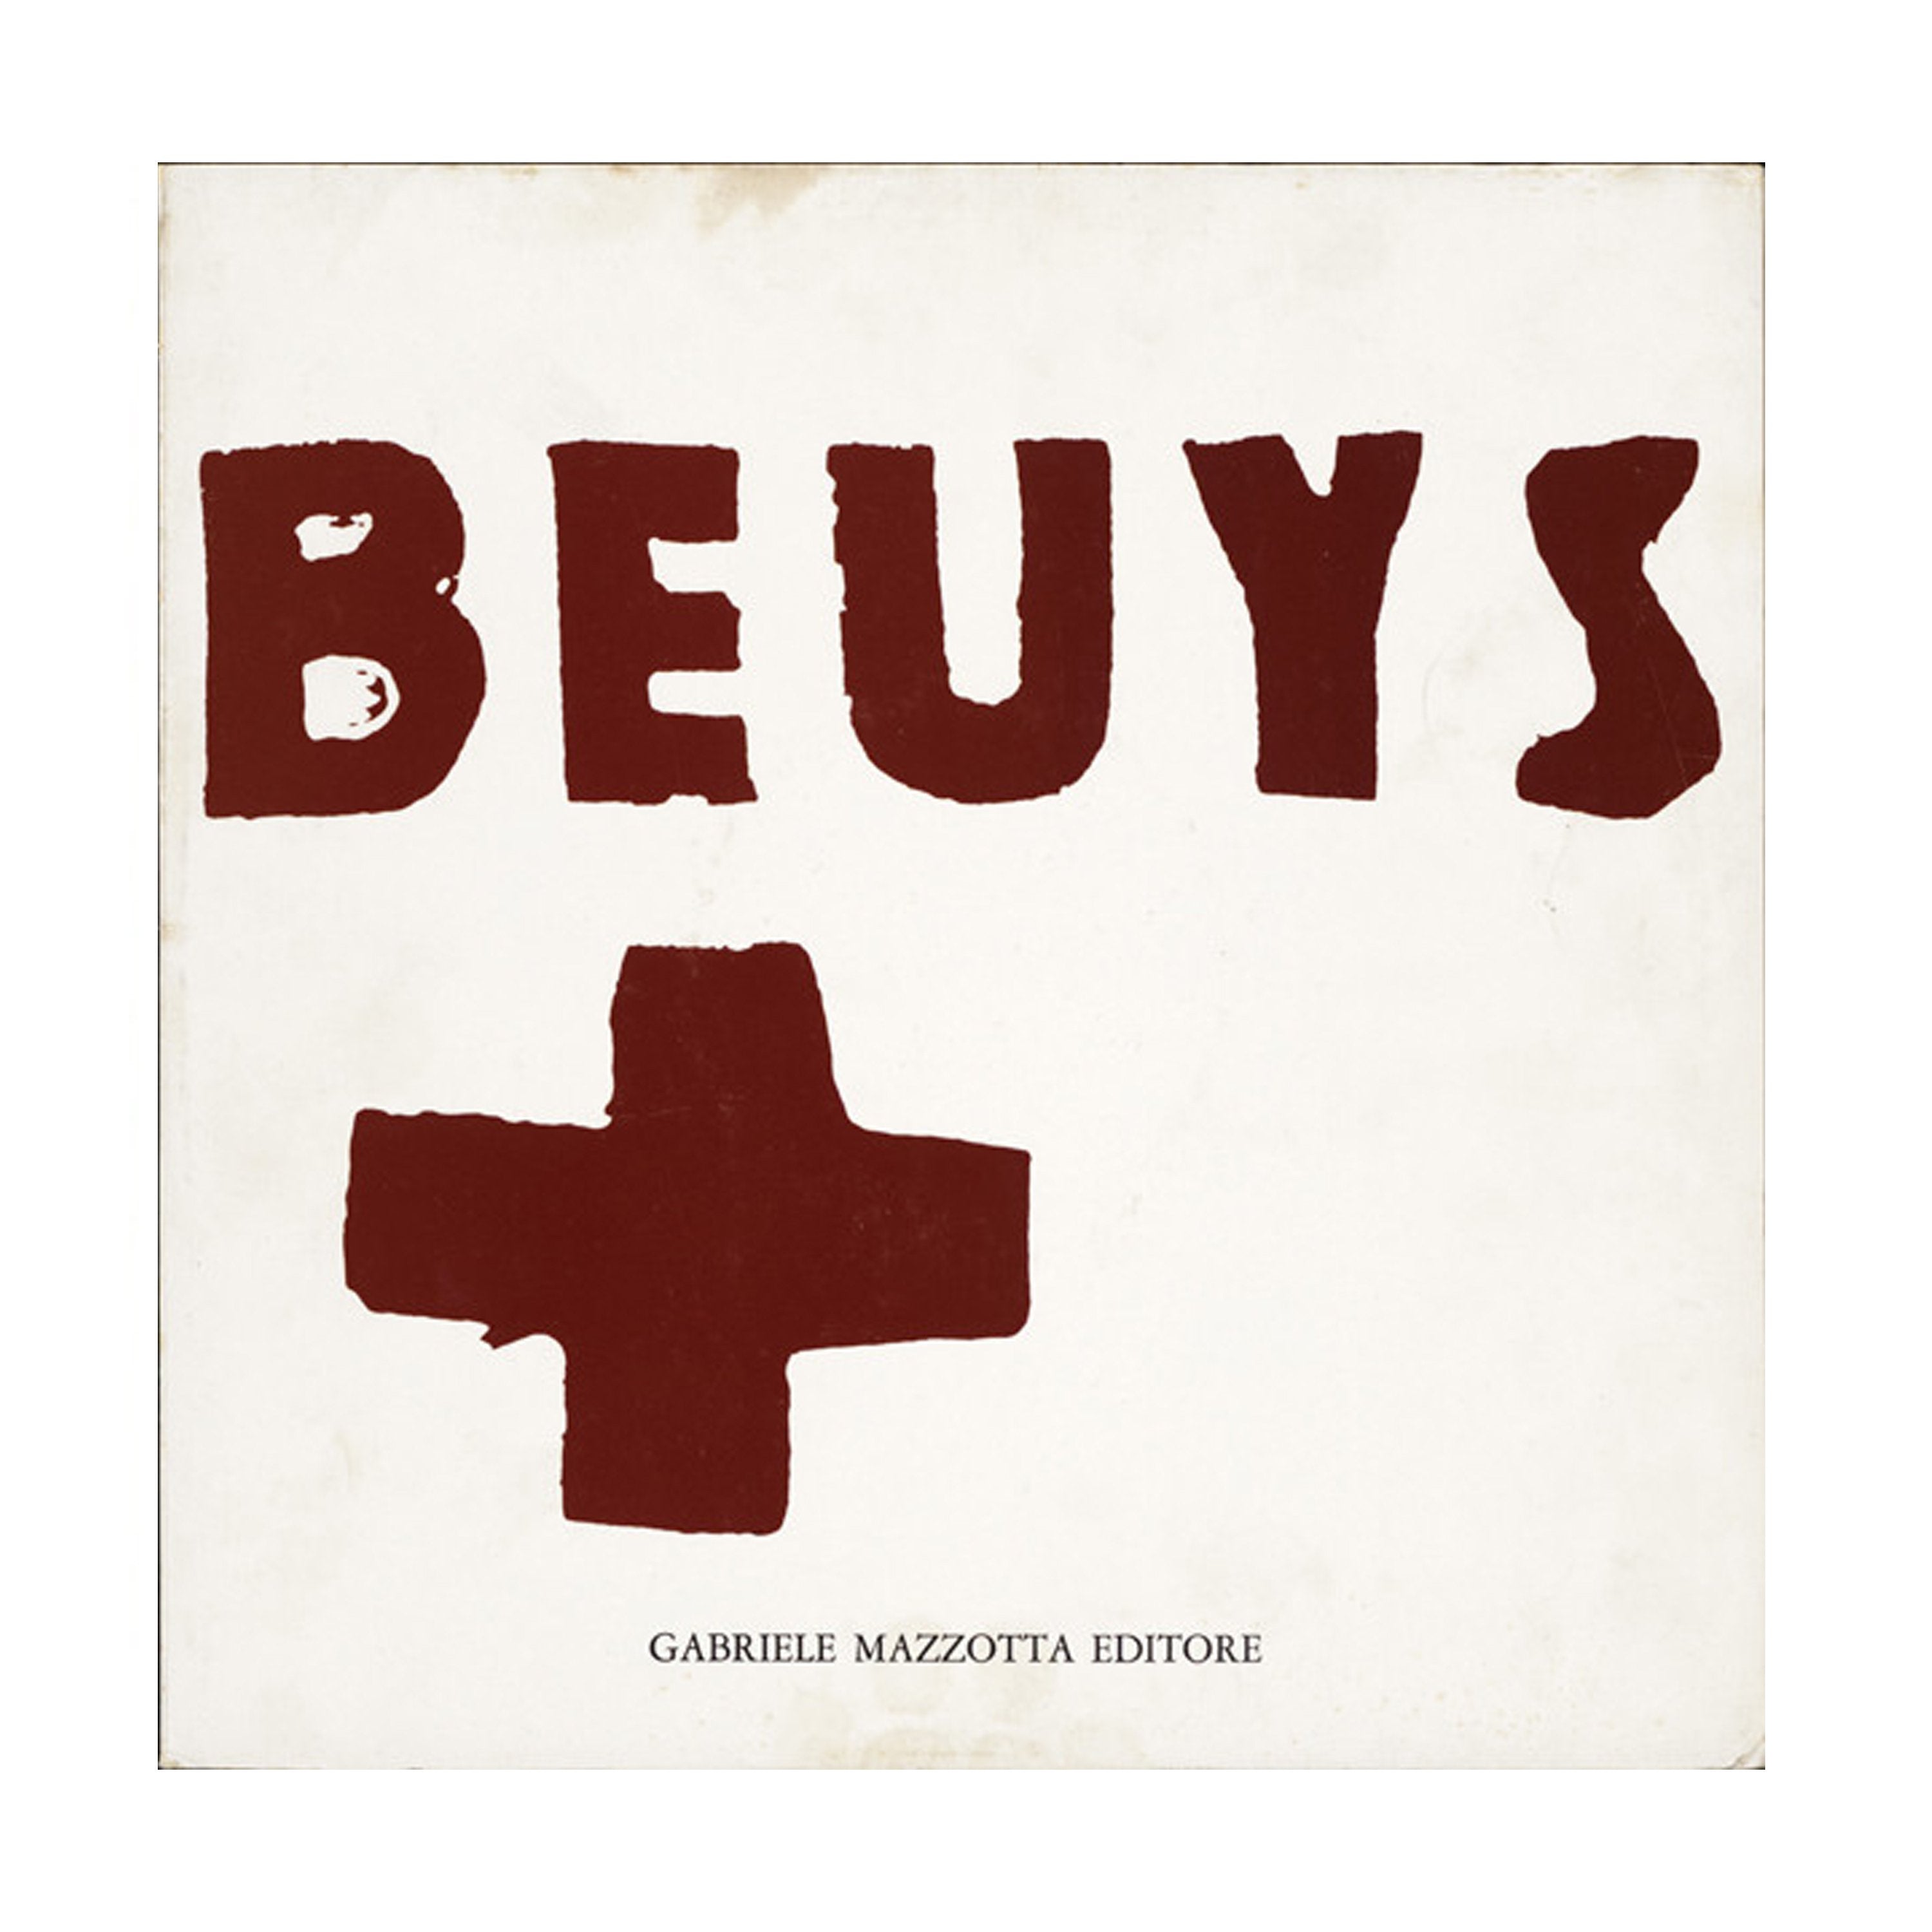 Ja Ja Ja, Joseph Beuys - ONEROOM